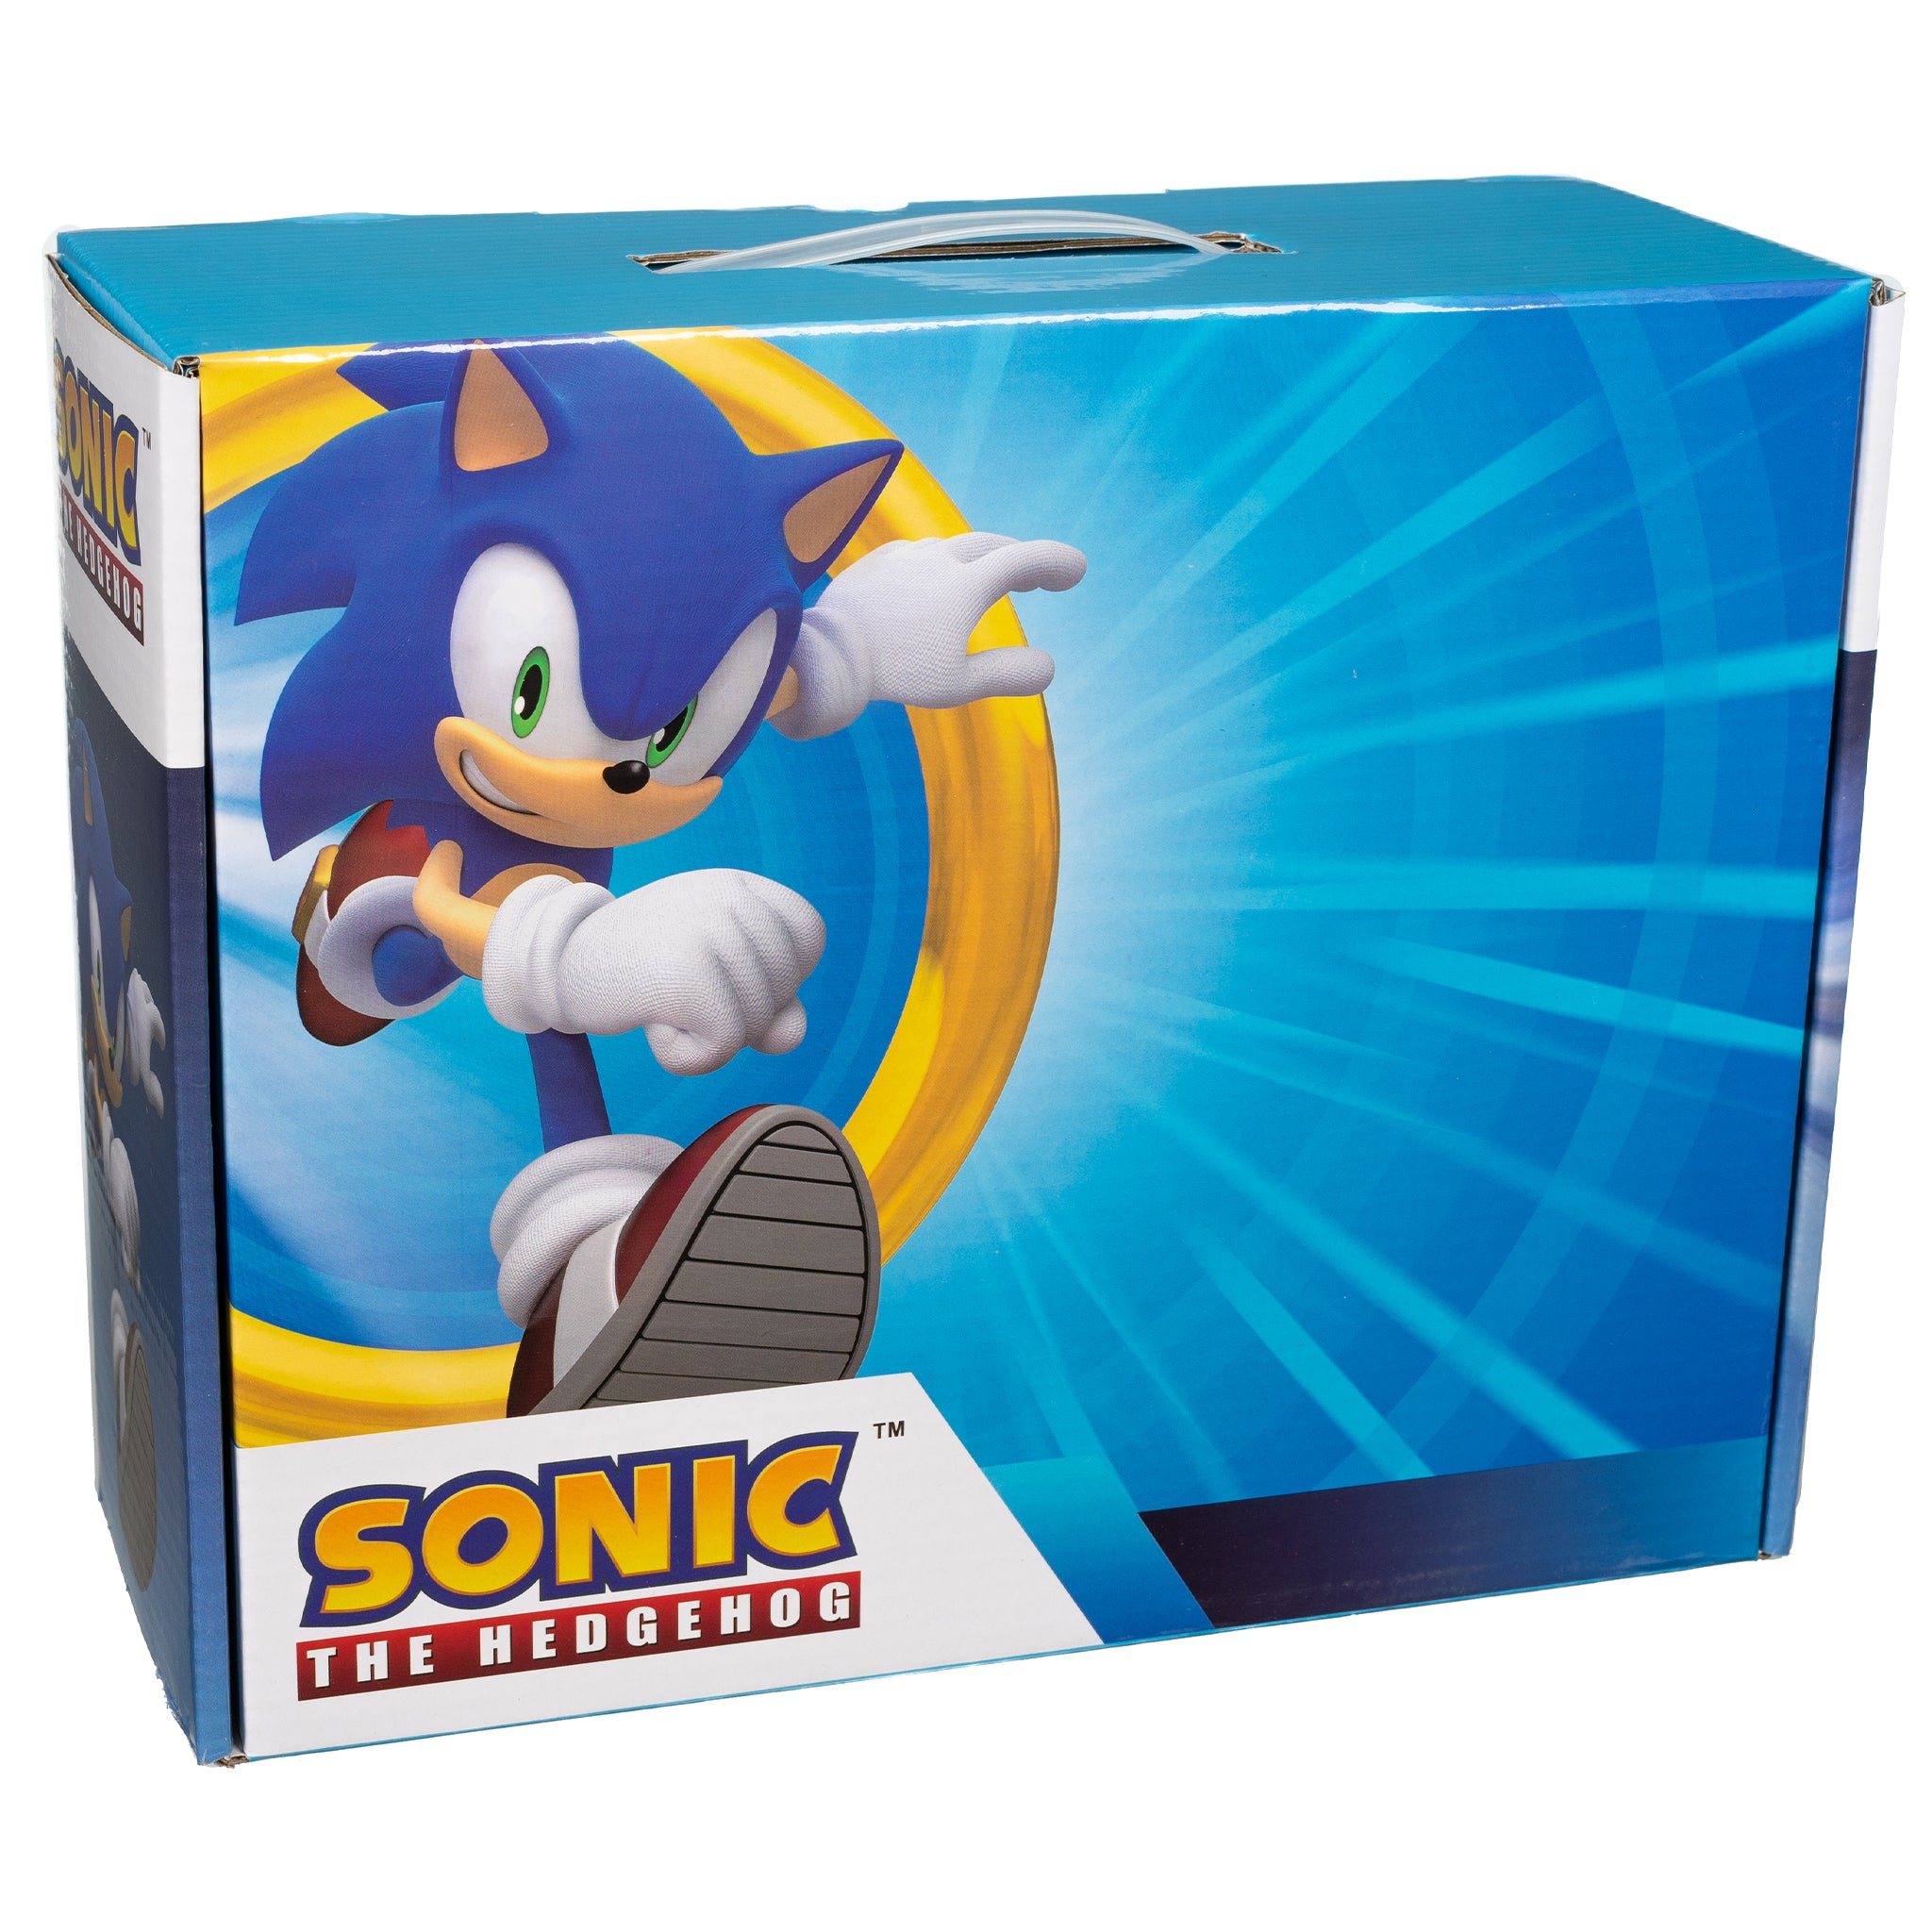 Sonic The Hedgehog Box